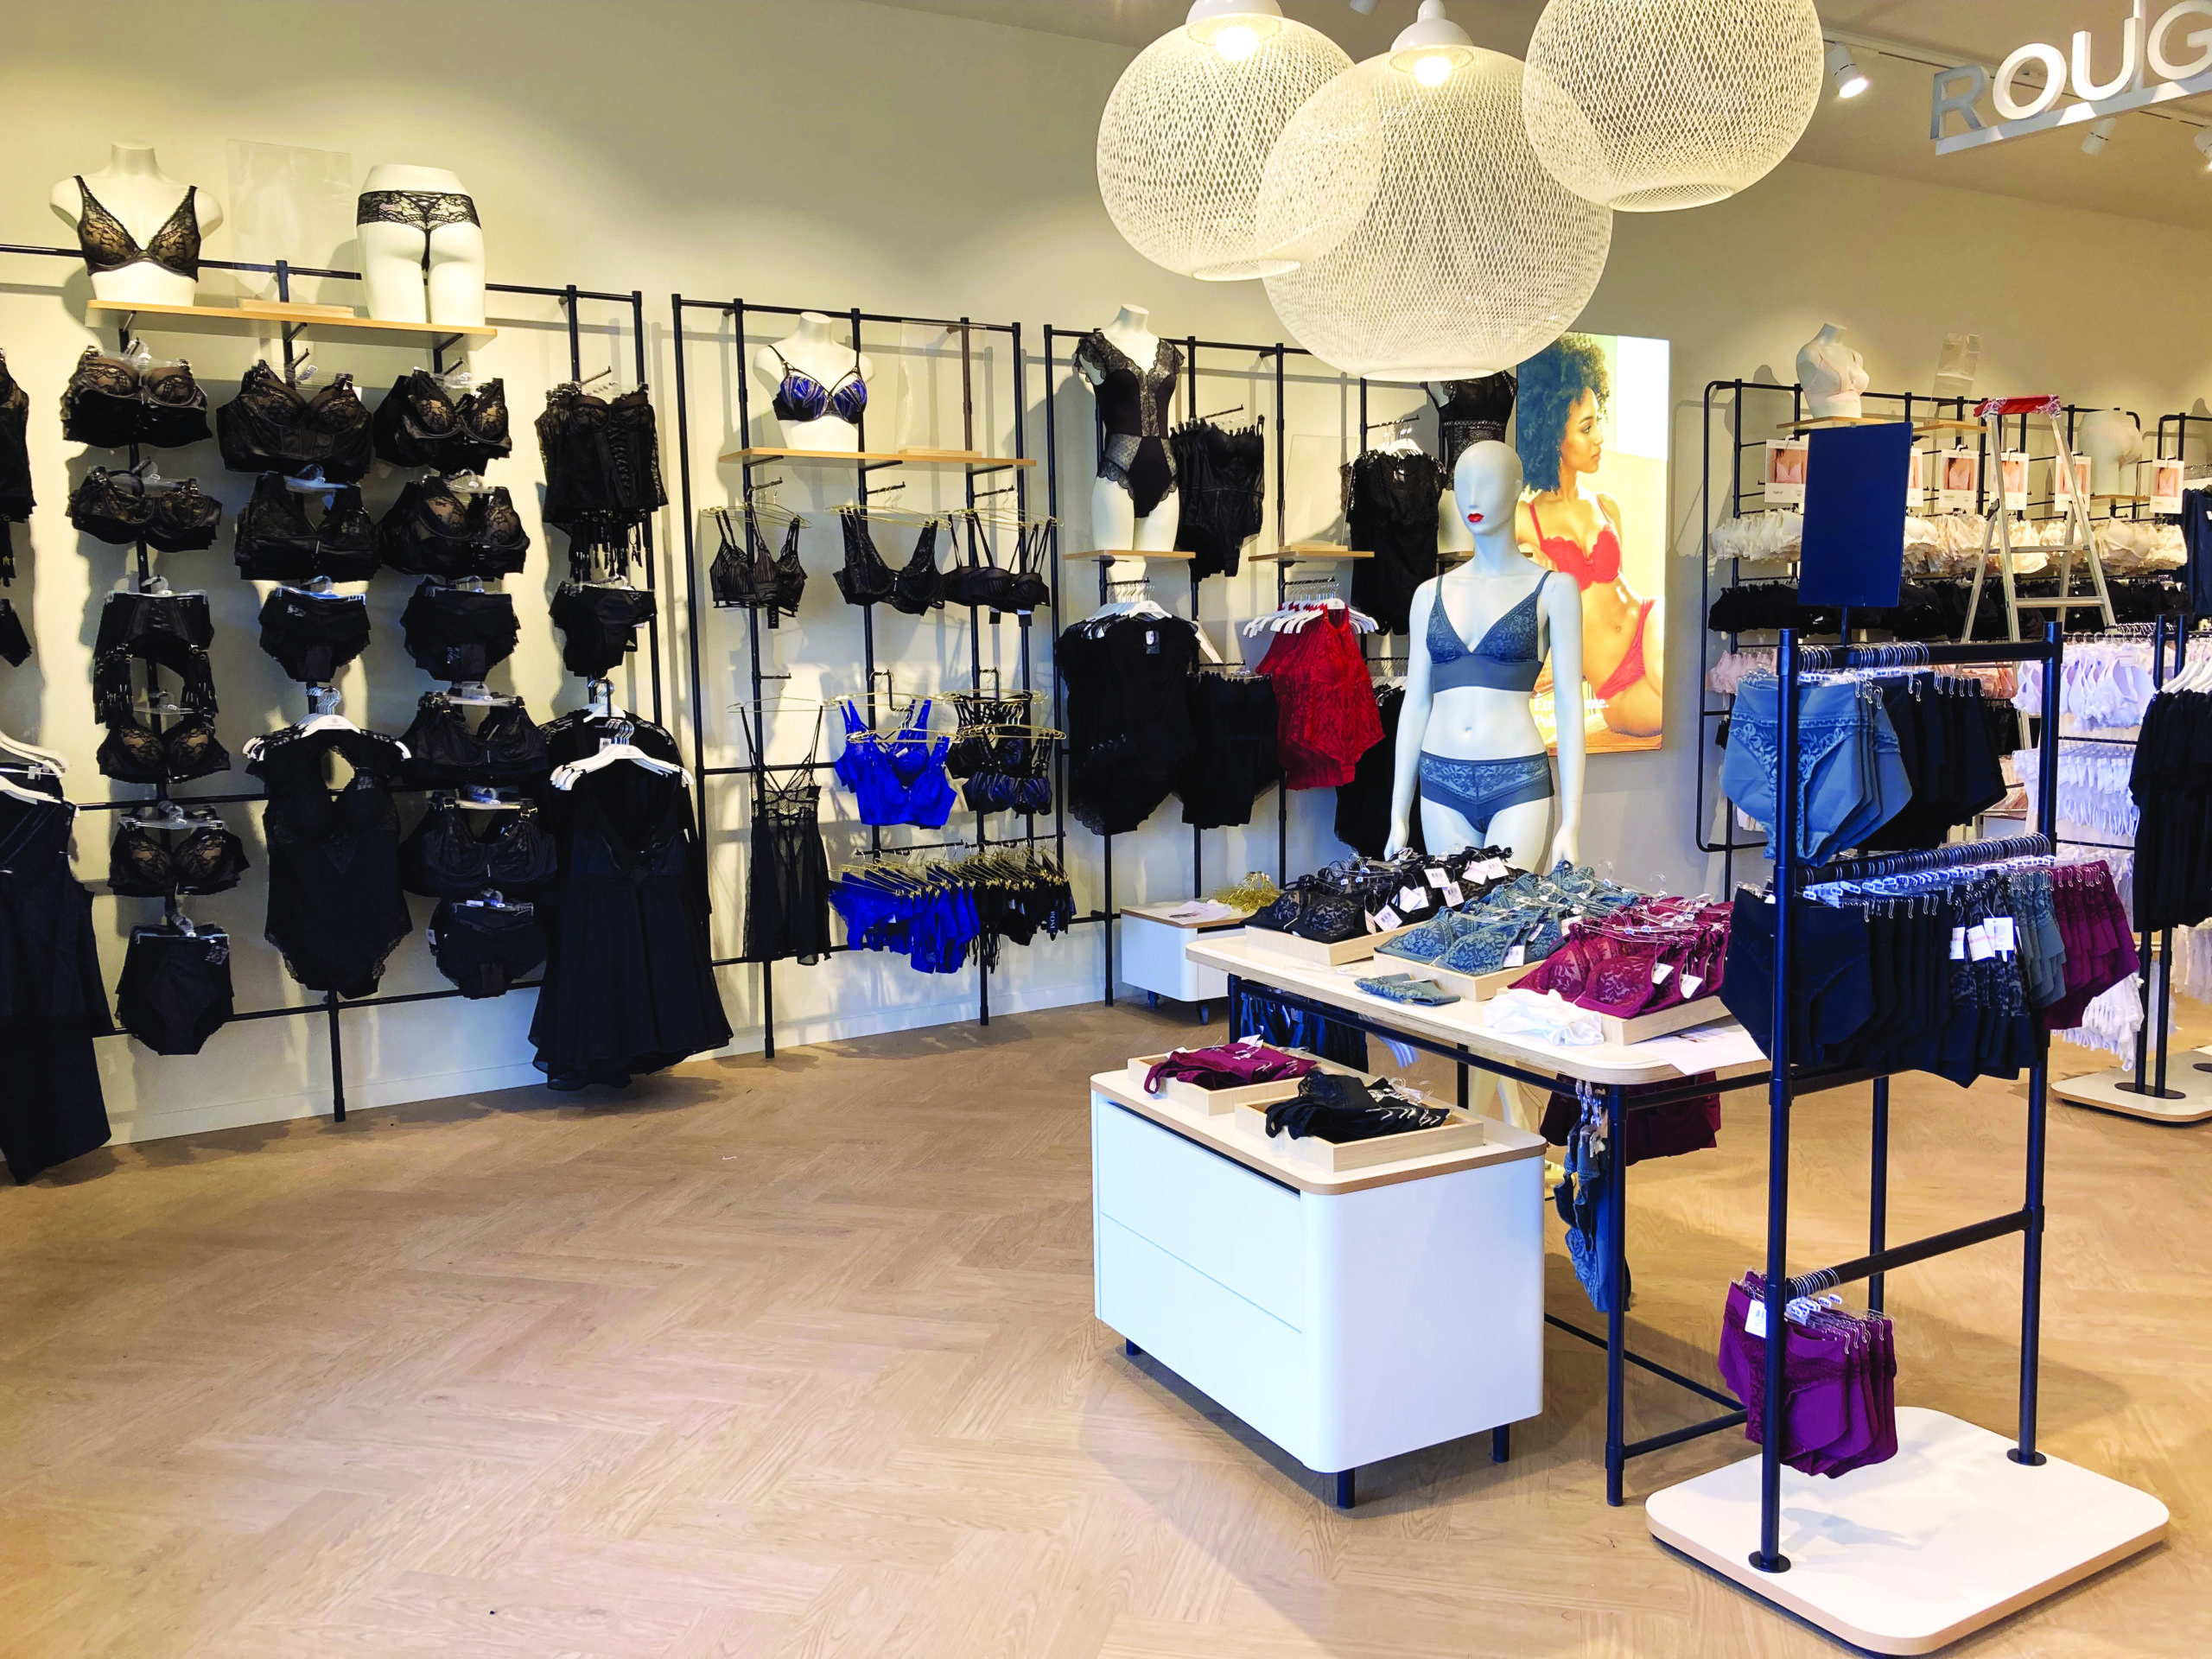 Le nouveau magasin Rougegorge d'Épinal ouvre ses portes, ce mercredi 11 mai.